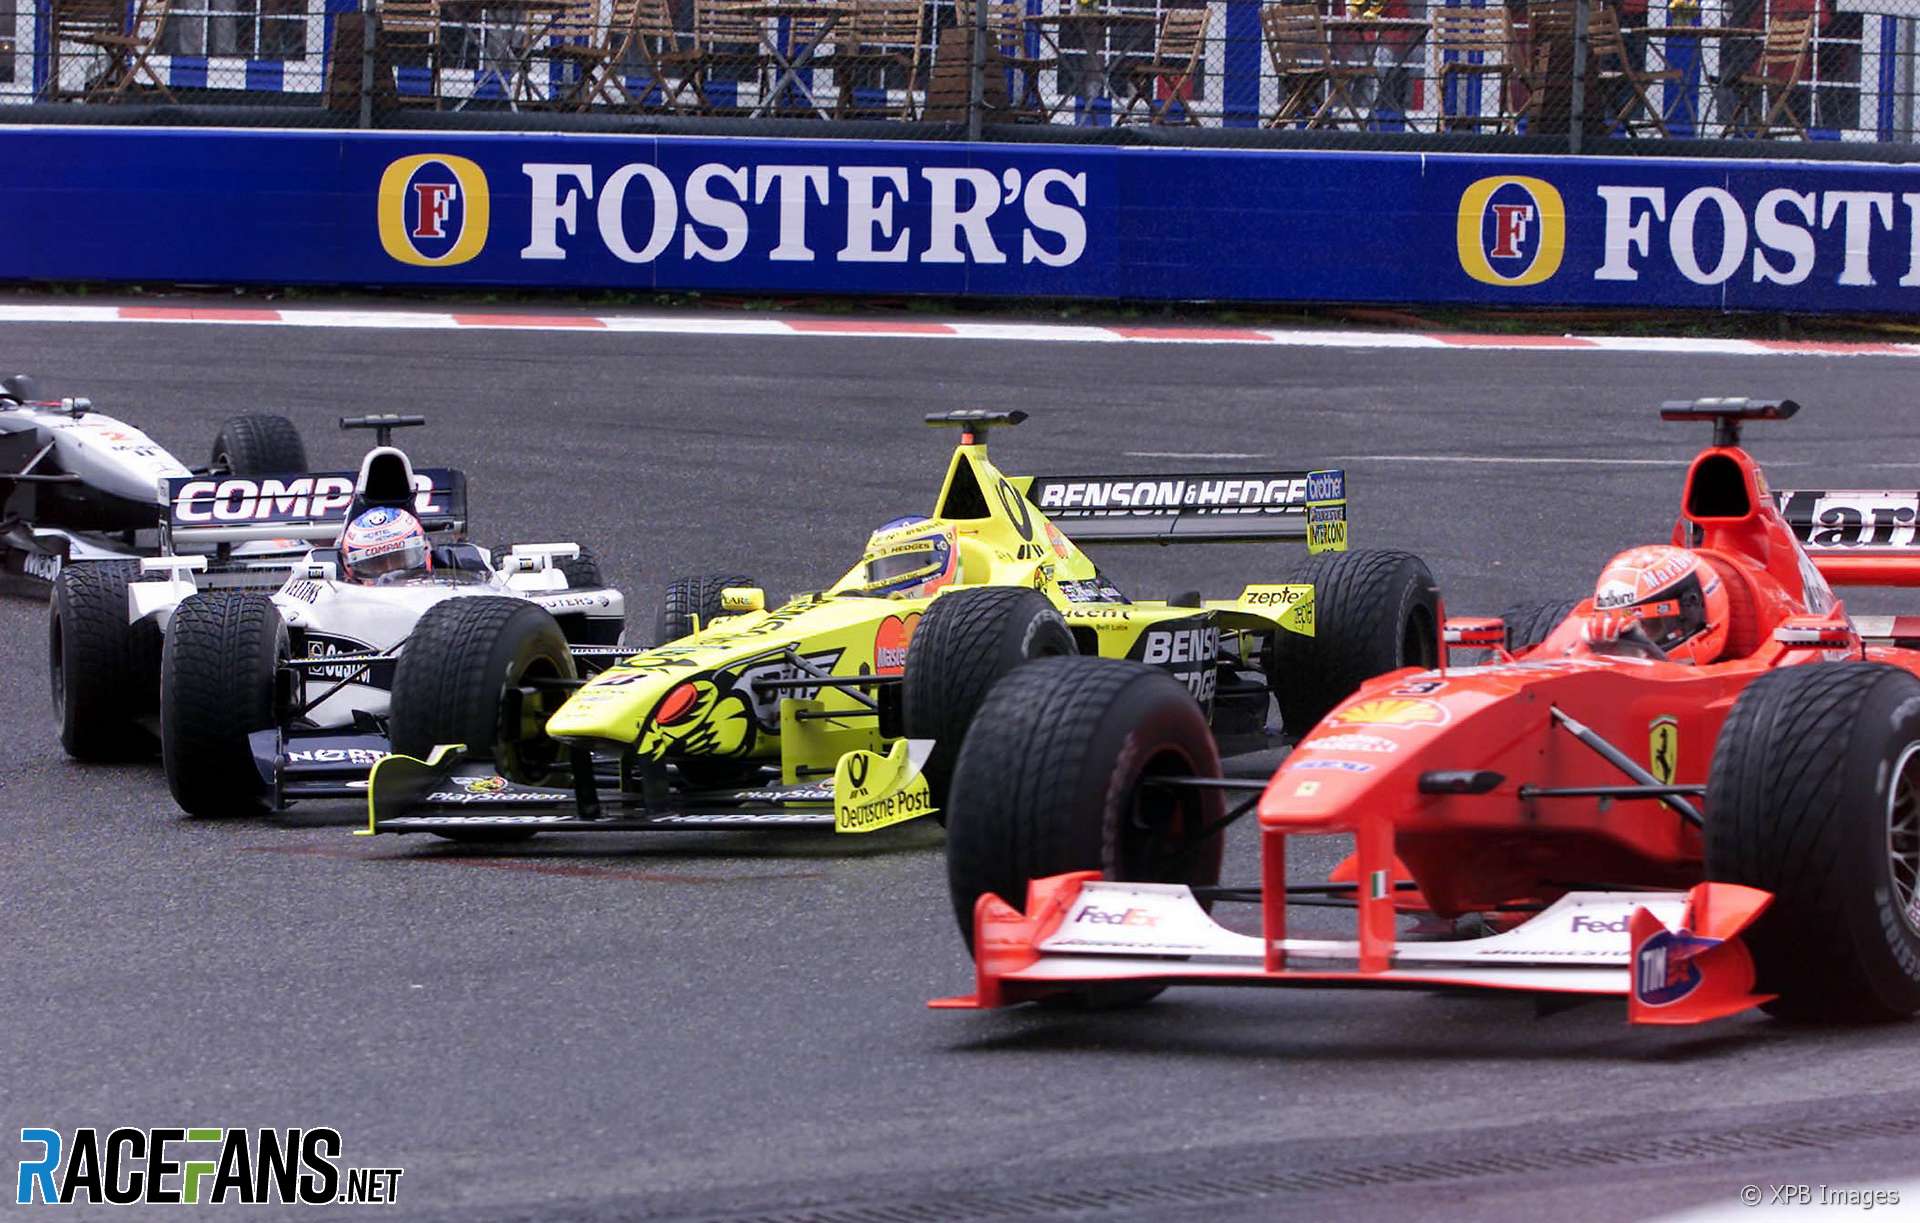 Michael Schumacher, Jarno Trulli, Jenson Button, David Coulthard, Spa-Francorchamps, 2000